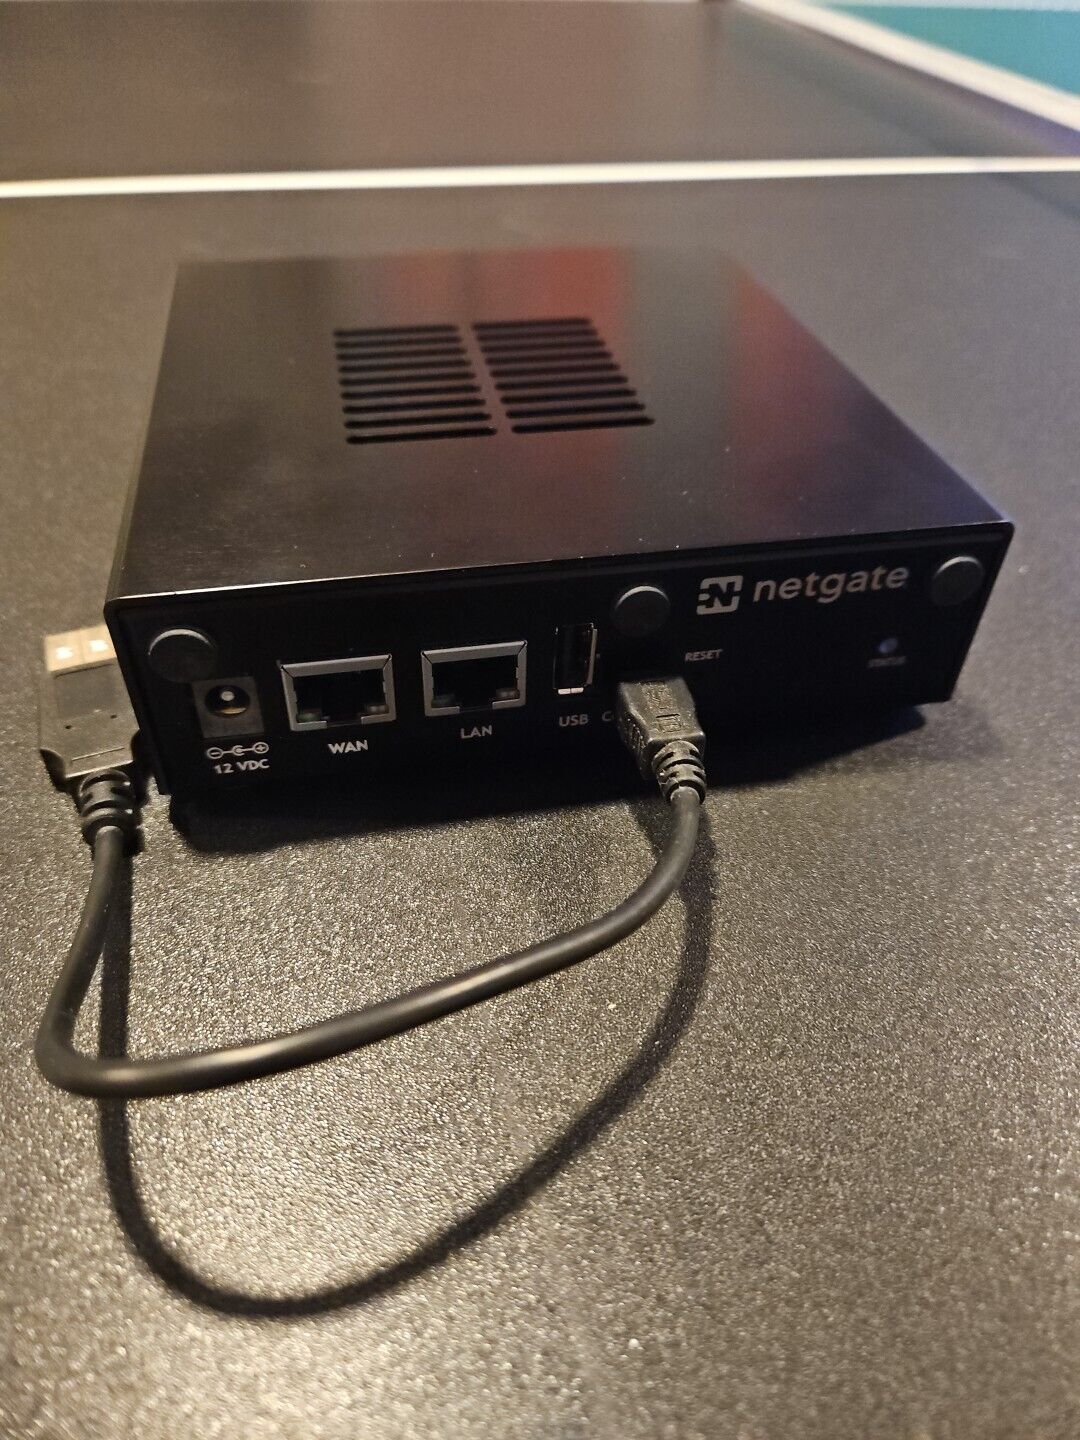 Netgate pfsense SG-2220 pfsense firewall security gateway